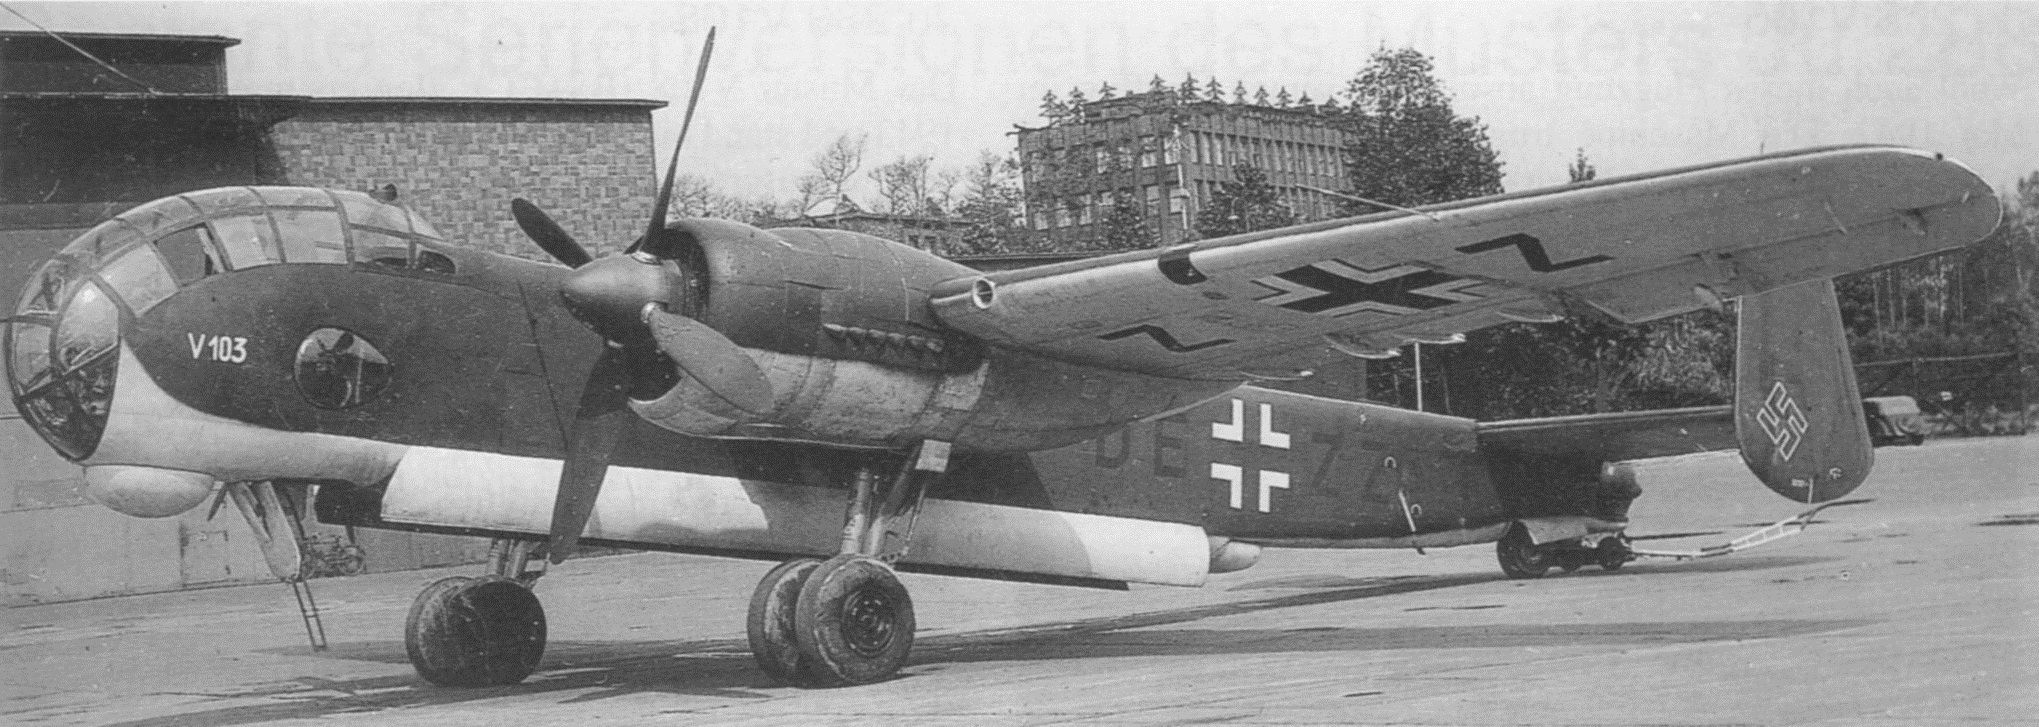 Ju-288_v103